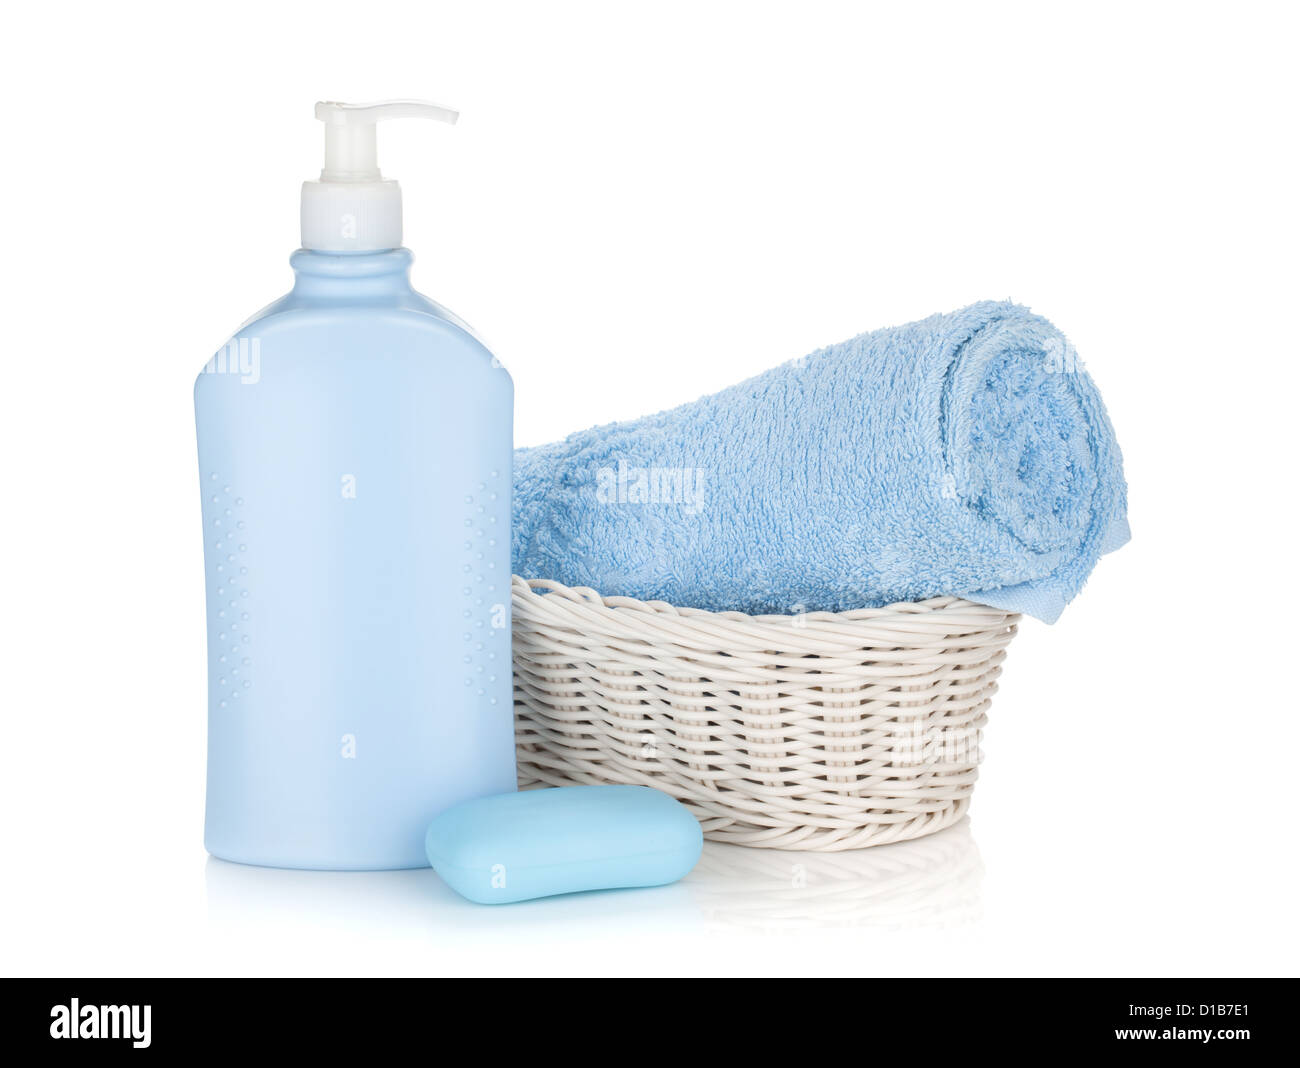 Шампунь полотенце. Средства гигиены на белом фоне. Шампунь и полотенце. Мыло и полотенце. Гигиенические товары для ванной.